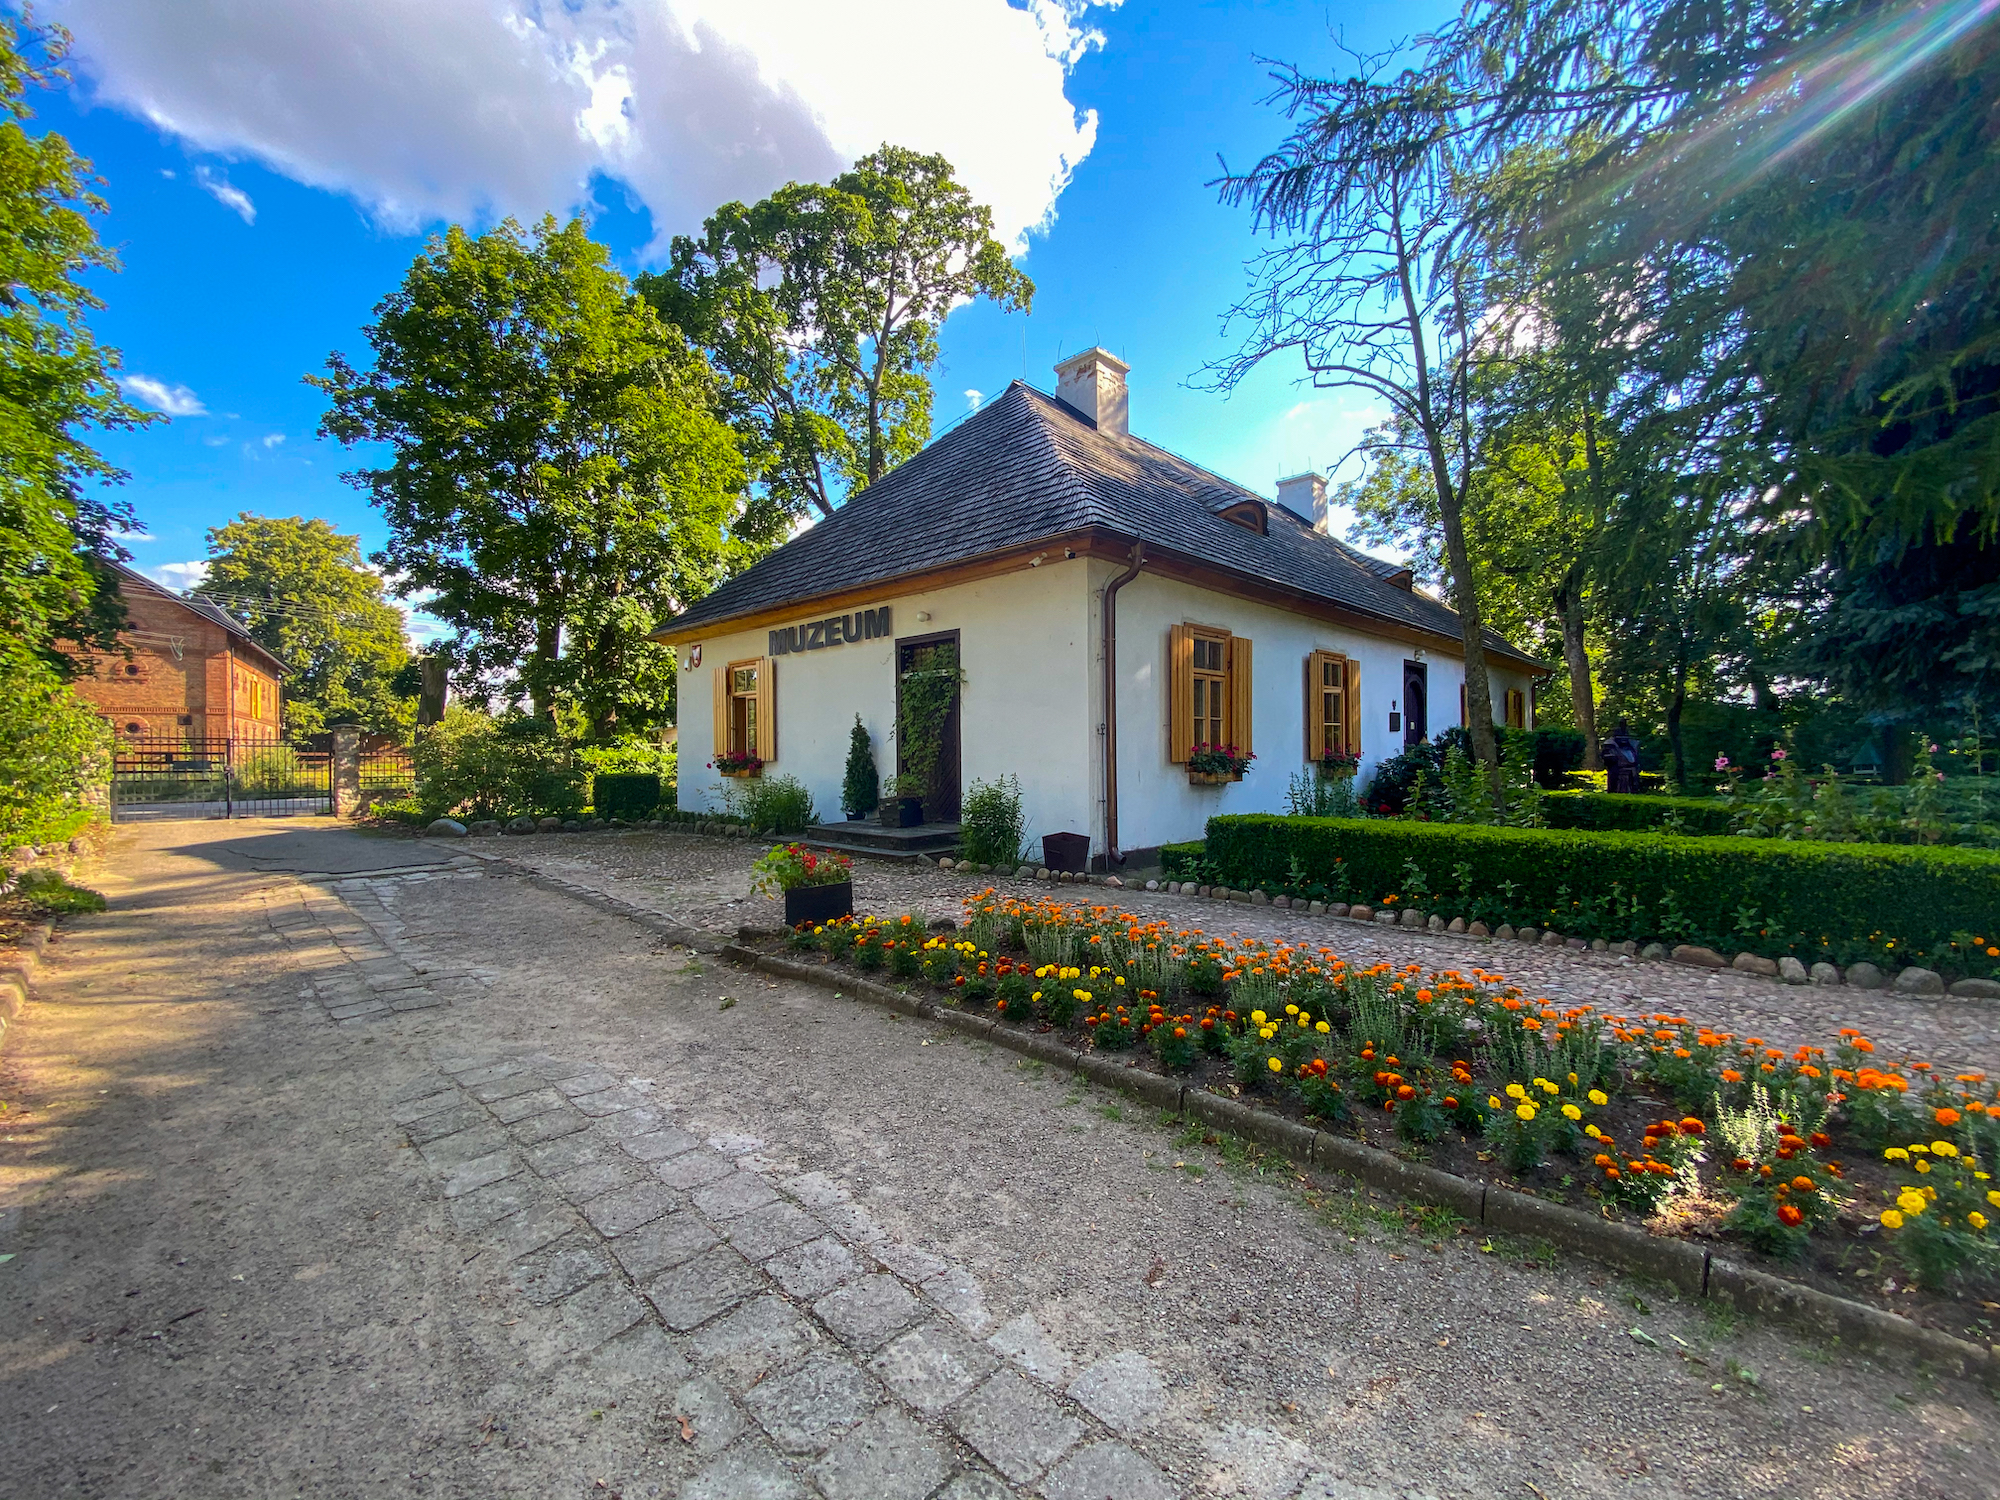 Muzeum Henryka Sienkiewicza w Woli Okrzejskiej - lubelskie atrakcje